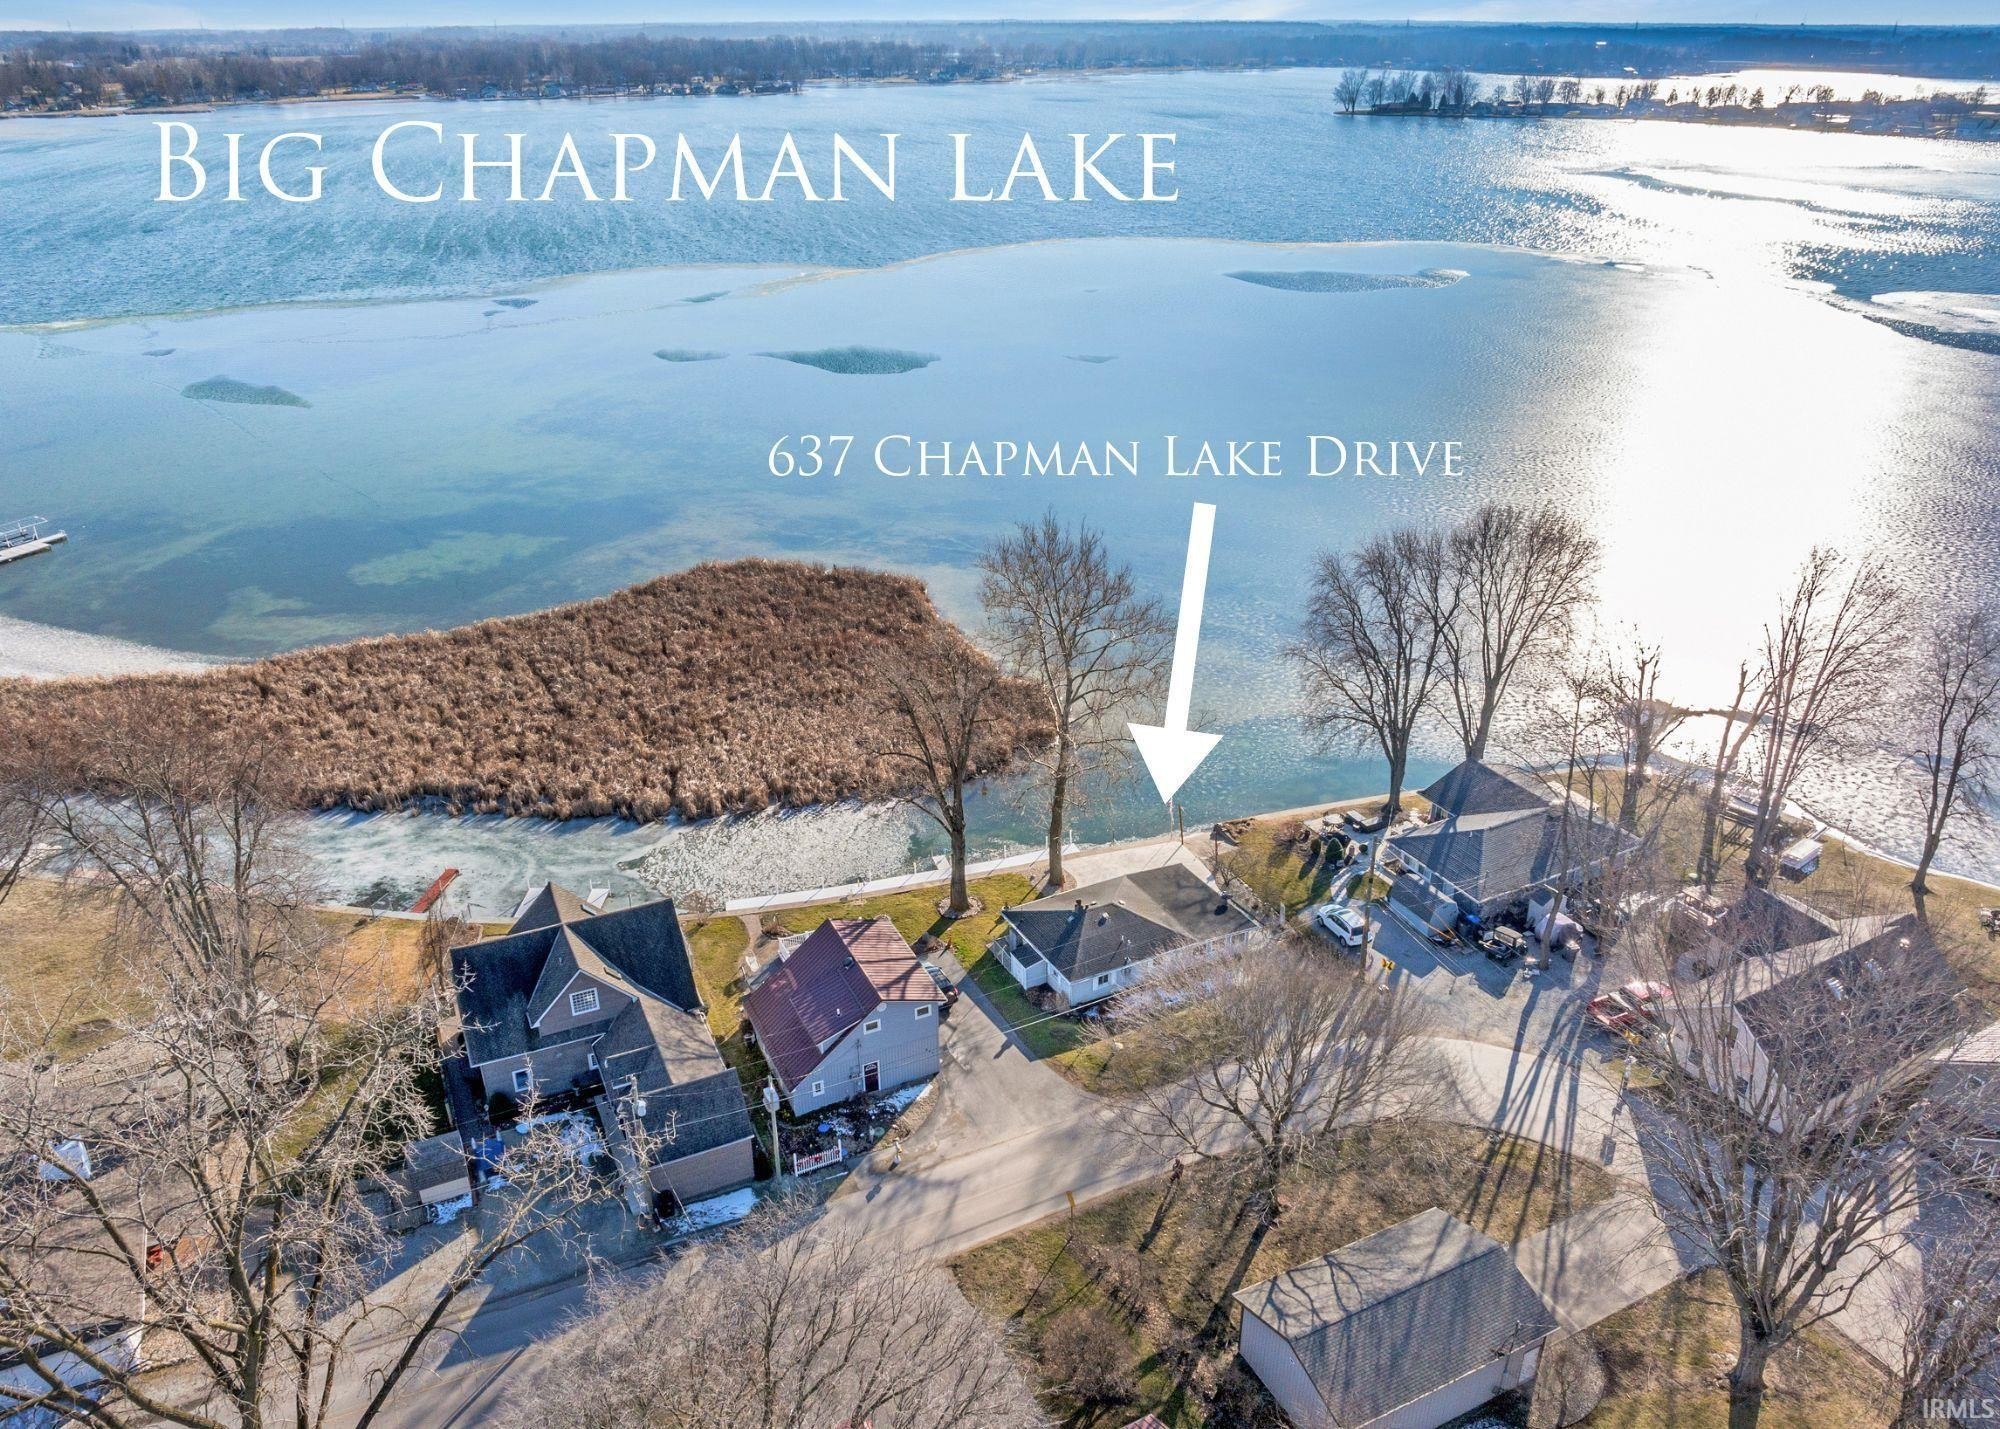 2. 637 Chapman Lake Drive